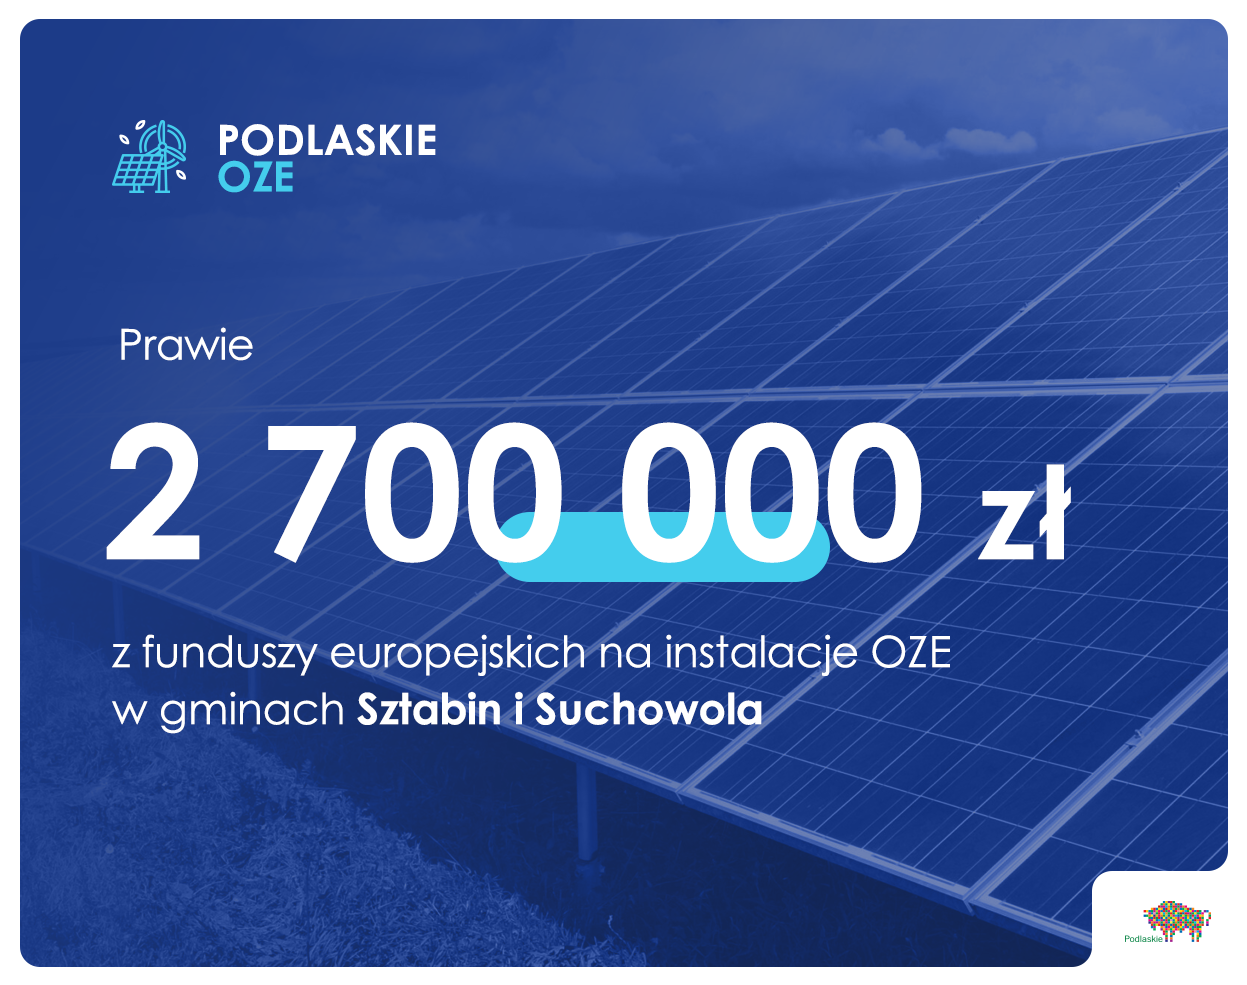 Infografika z kwotą przyznania funduszy europejskich na instalacje OZE w gminach Sztabin i Suchowola